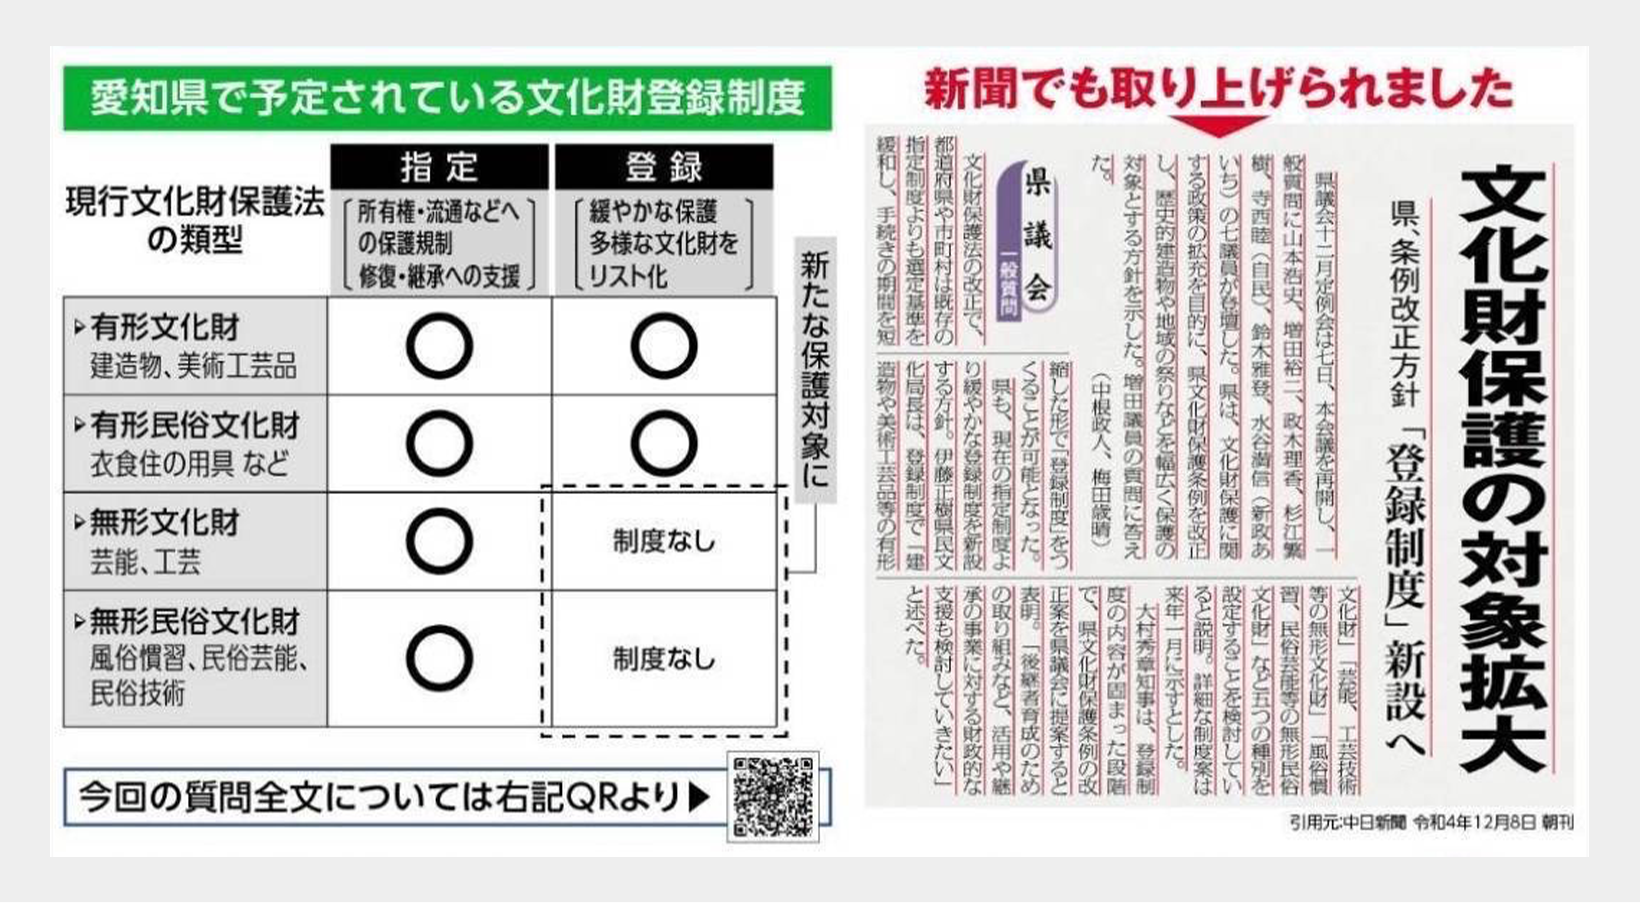 愛知県文化財登録制度の創設